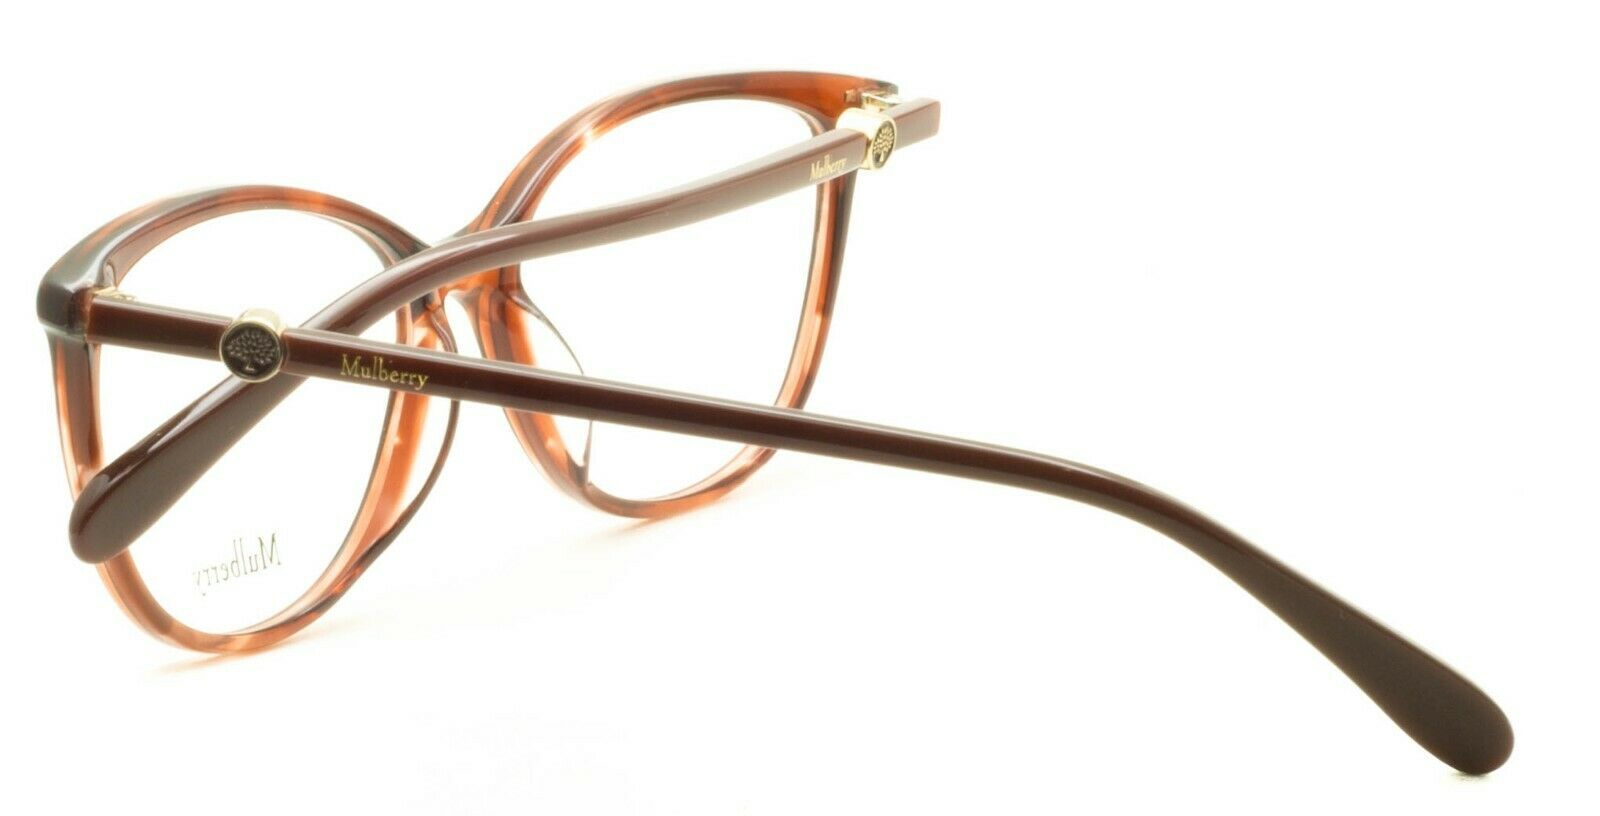 MULBERRY VML019 COL.01GJ 54mm Eyewear RX Optical FRAMES Glasses Eyeglasses - New